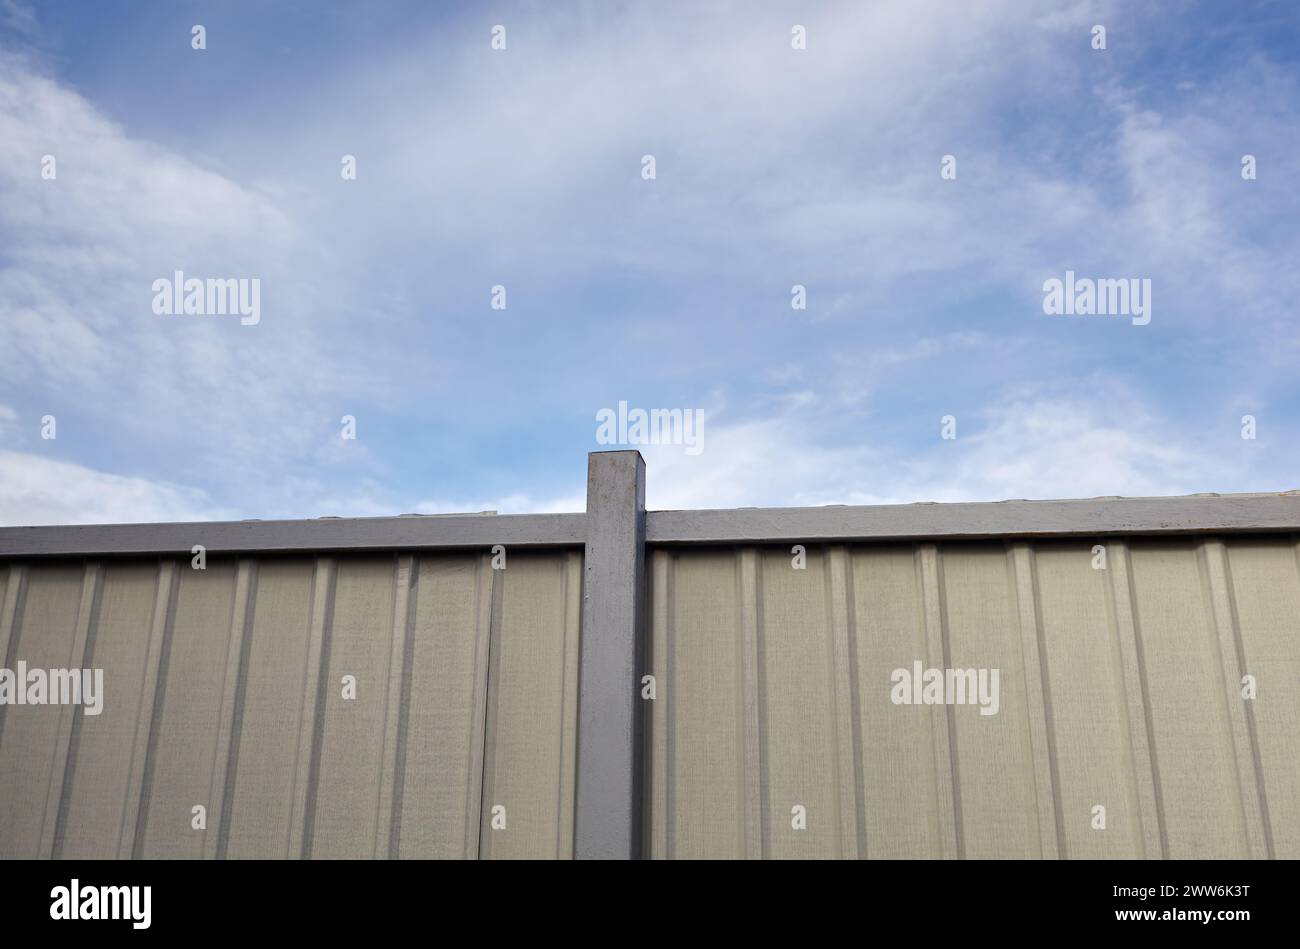 Clôture en acier ondulé contre le ciel bleu. Surface de texture métallique ondulée ou galvaniser l'acier Banque D'Images